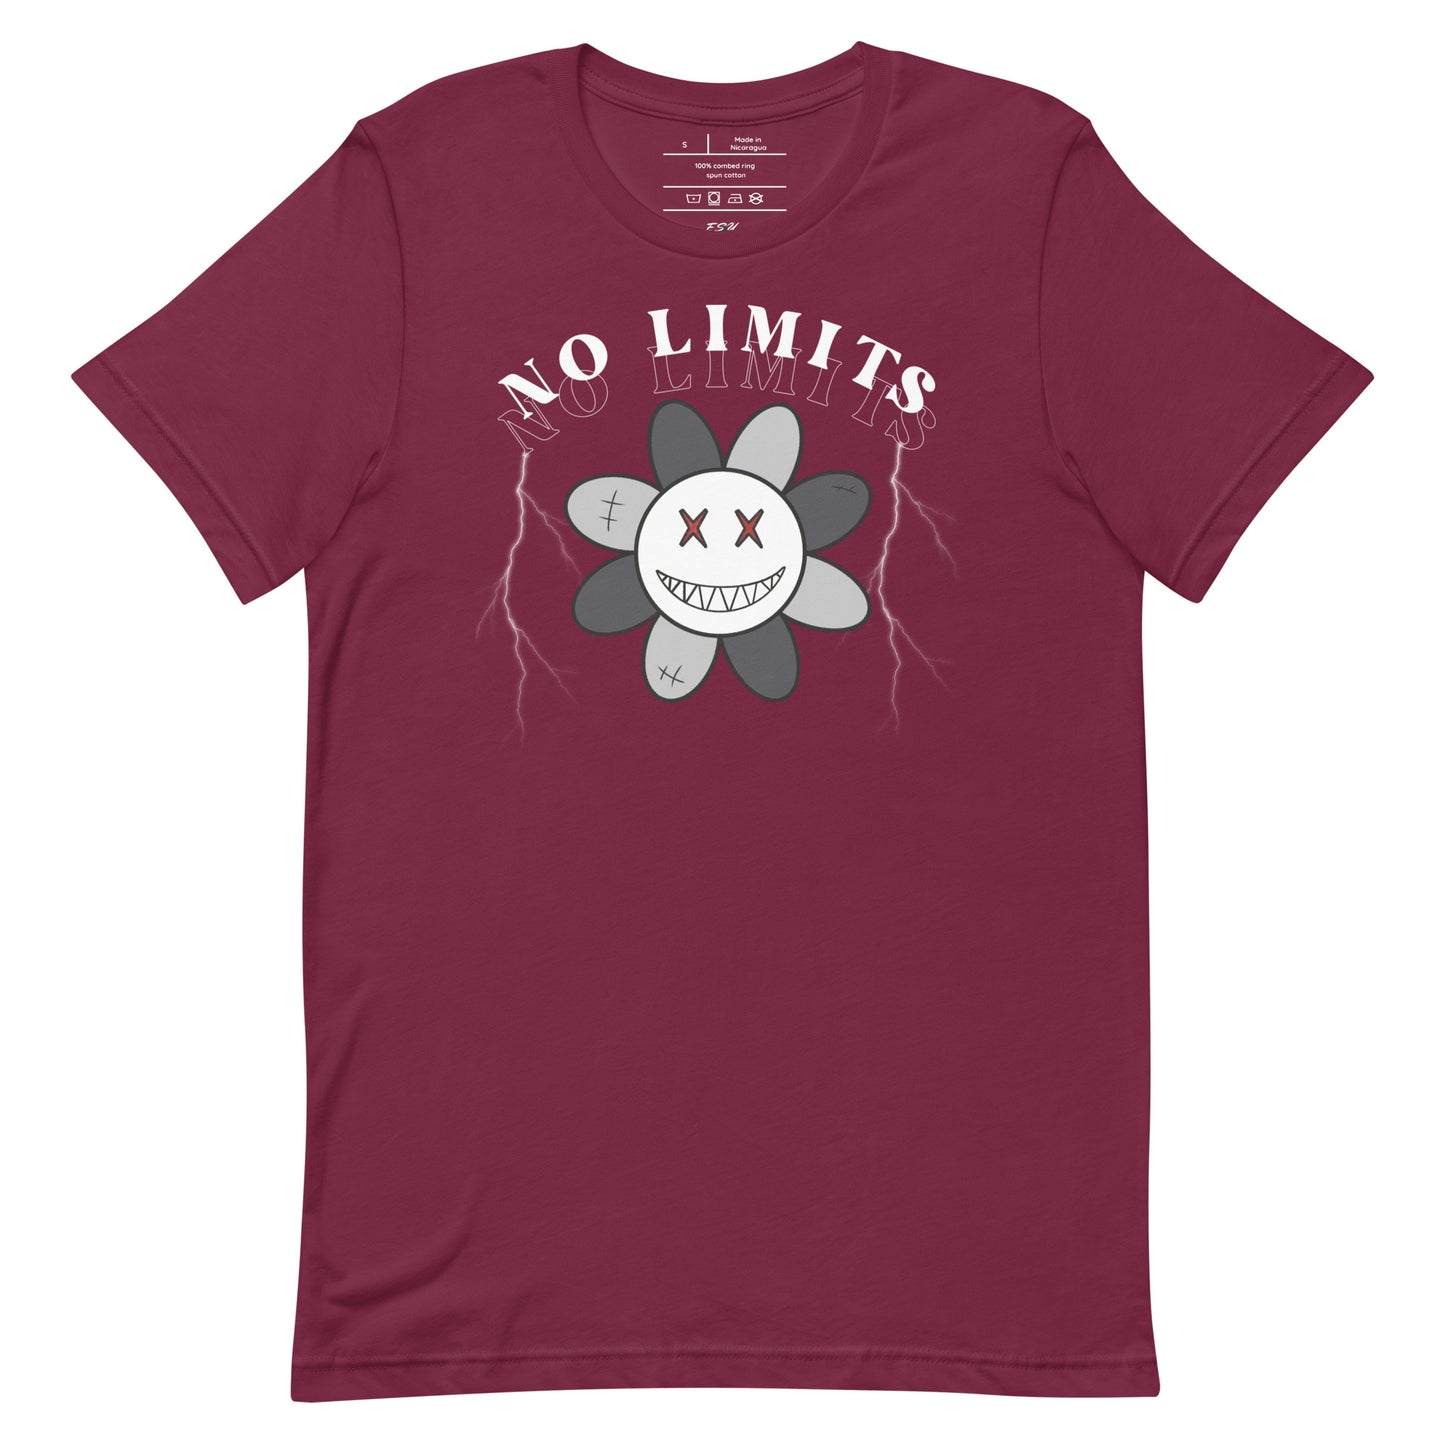 No Limits - T-Shirt